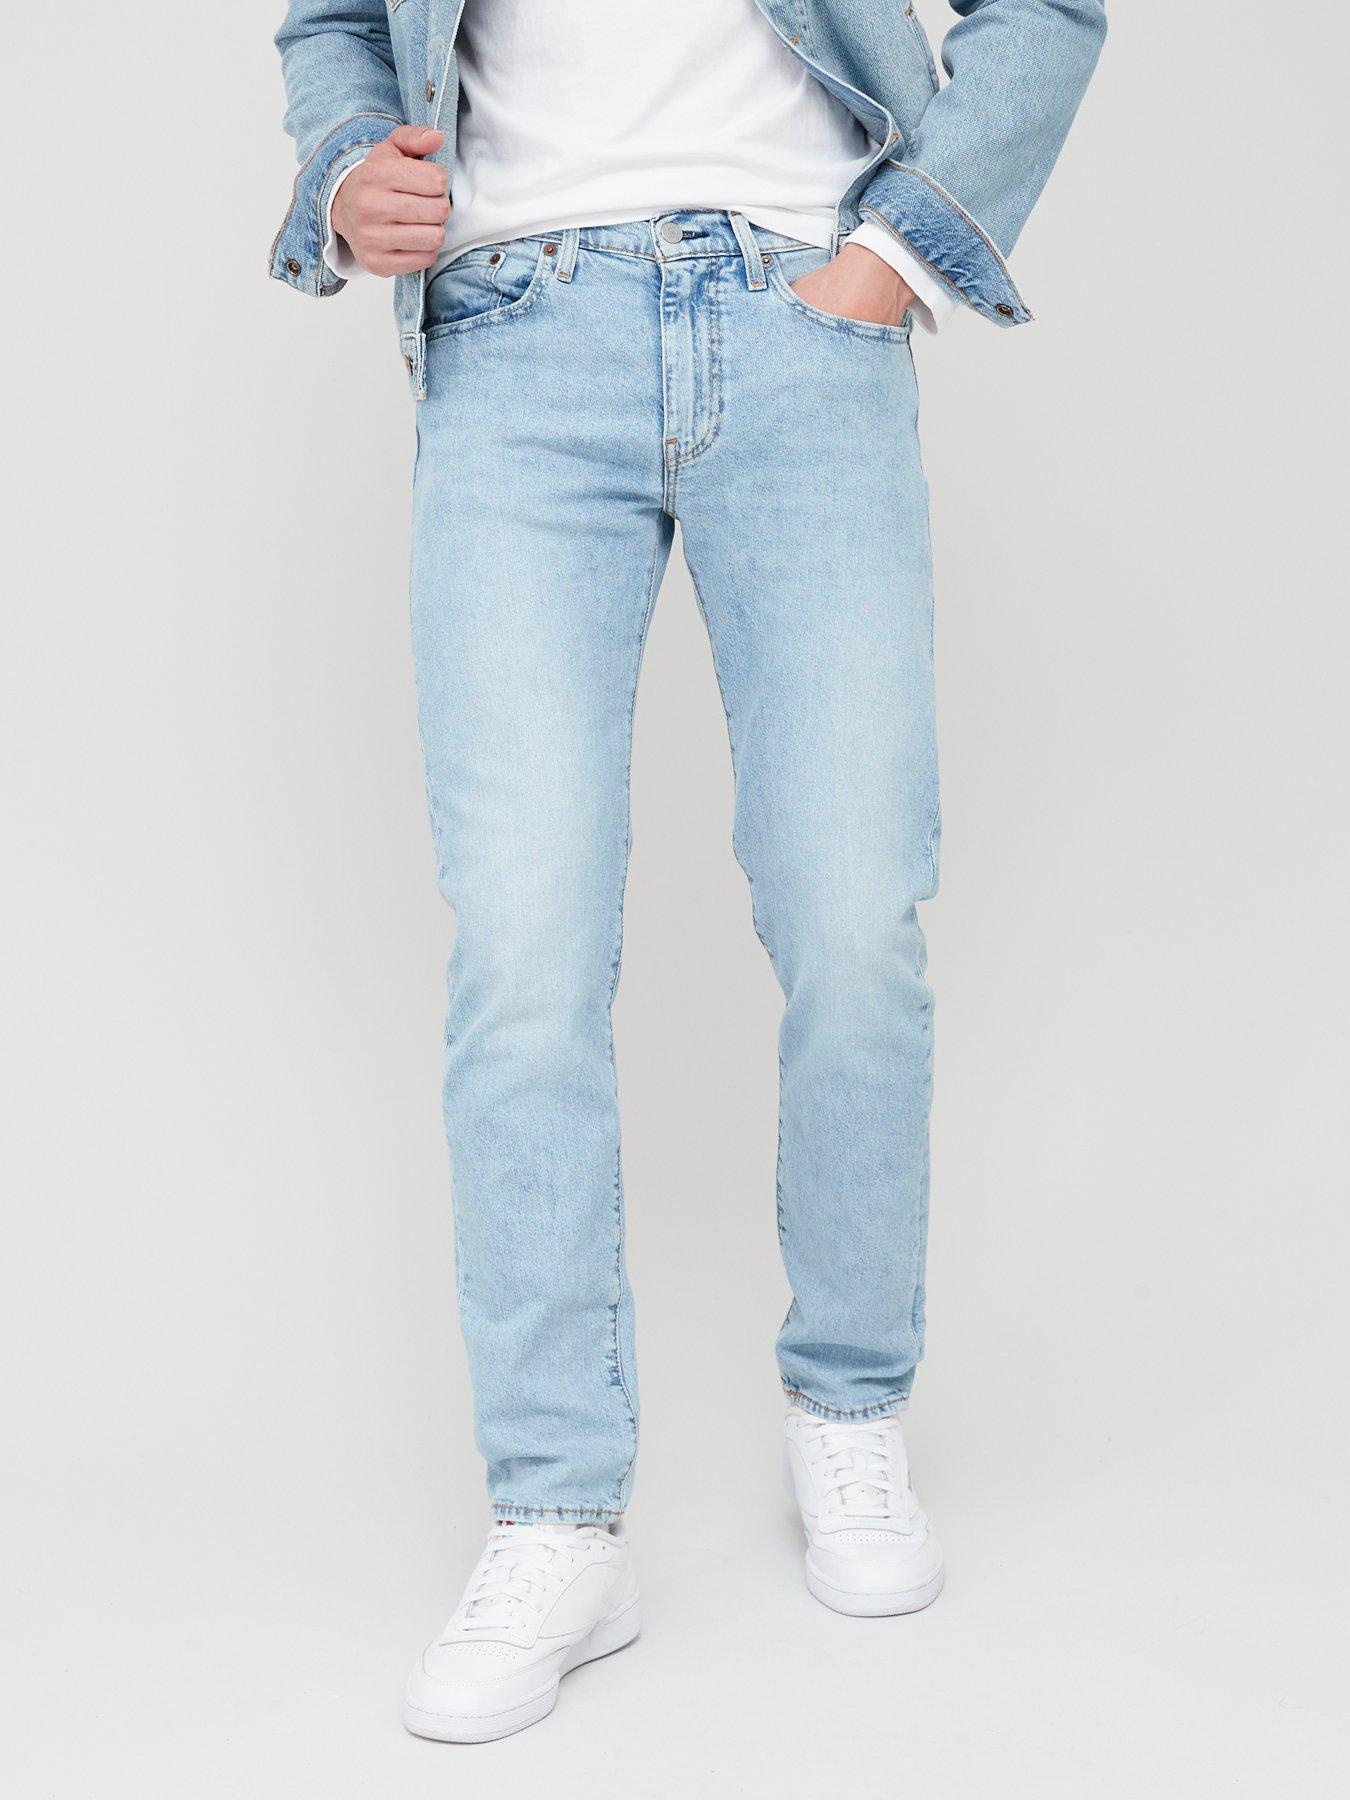 Levi's 502 Regular Taper Fit Jeans - Medium Indigo 